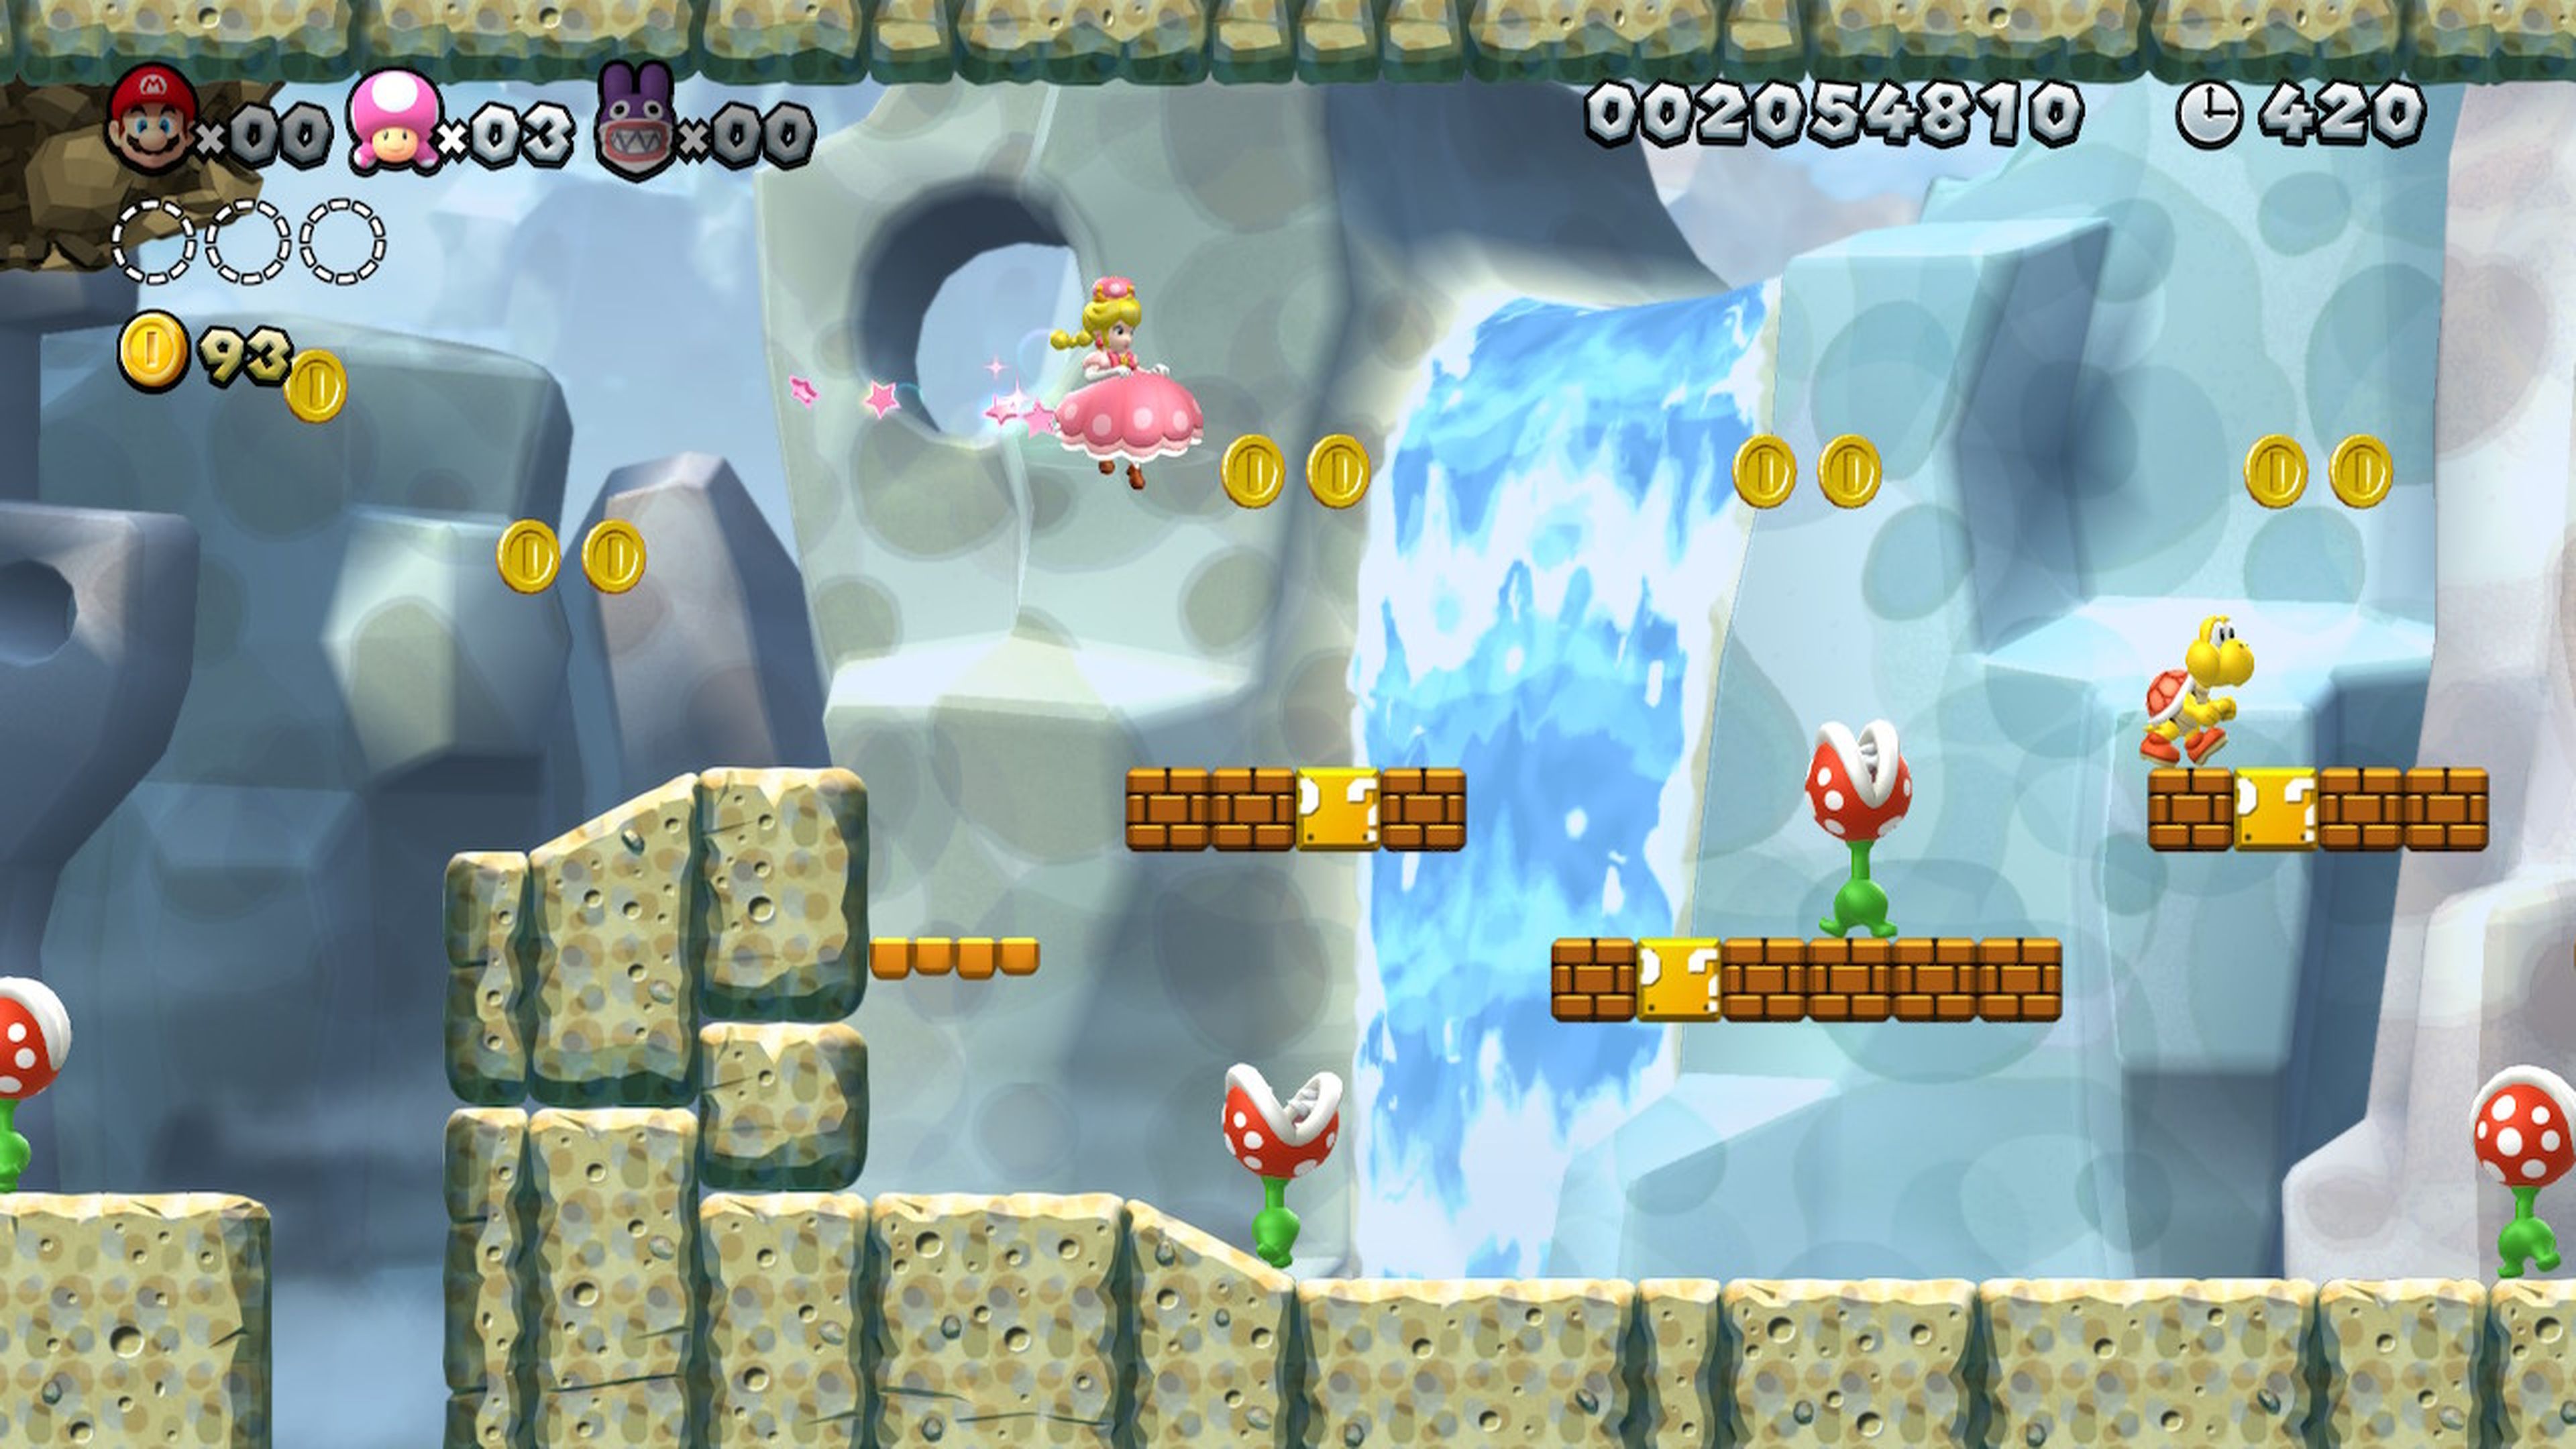 Análisis de New Super Mario Bros. U Deluxe para Nintendo Switch